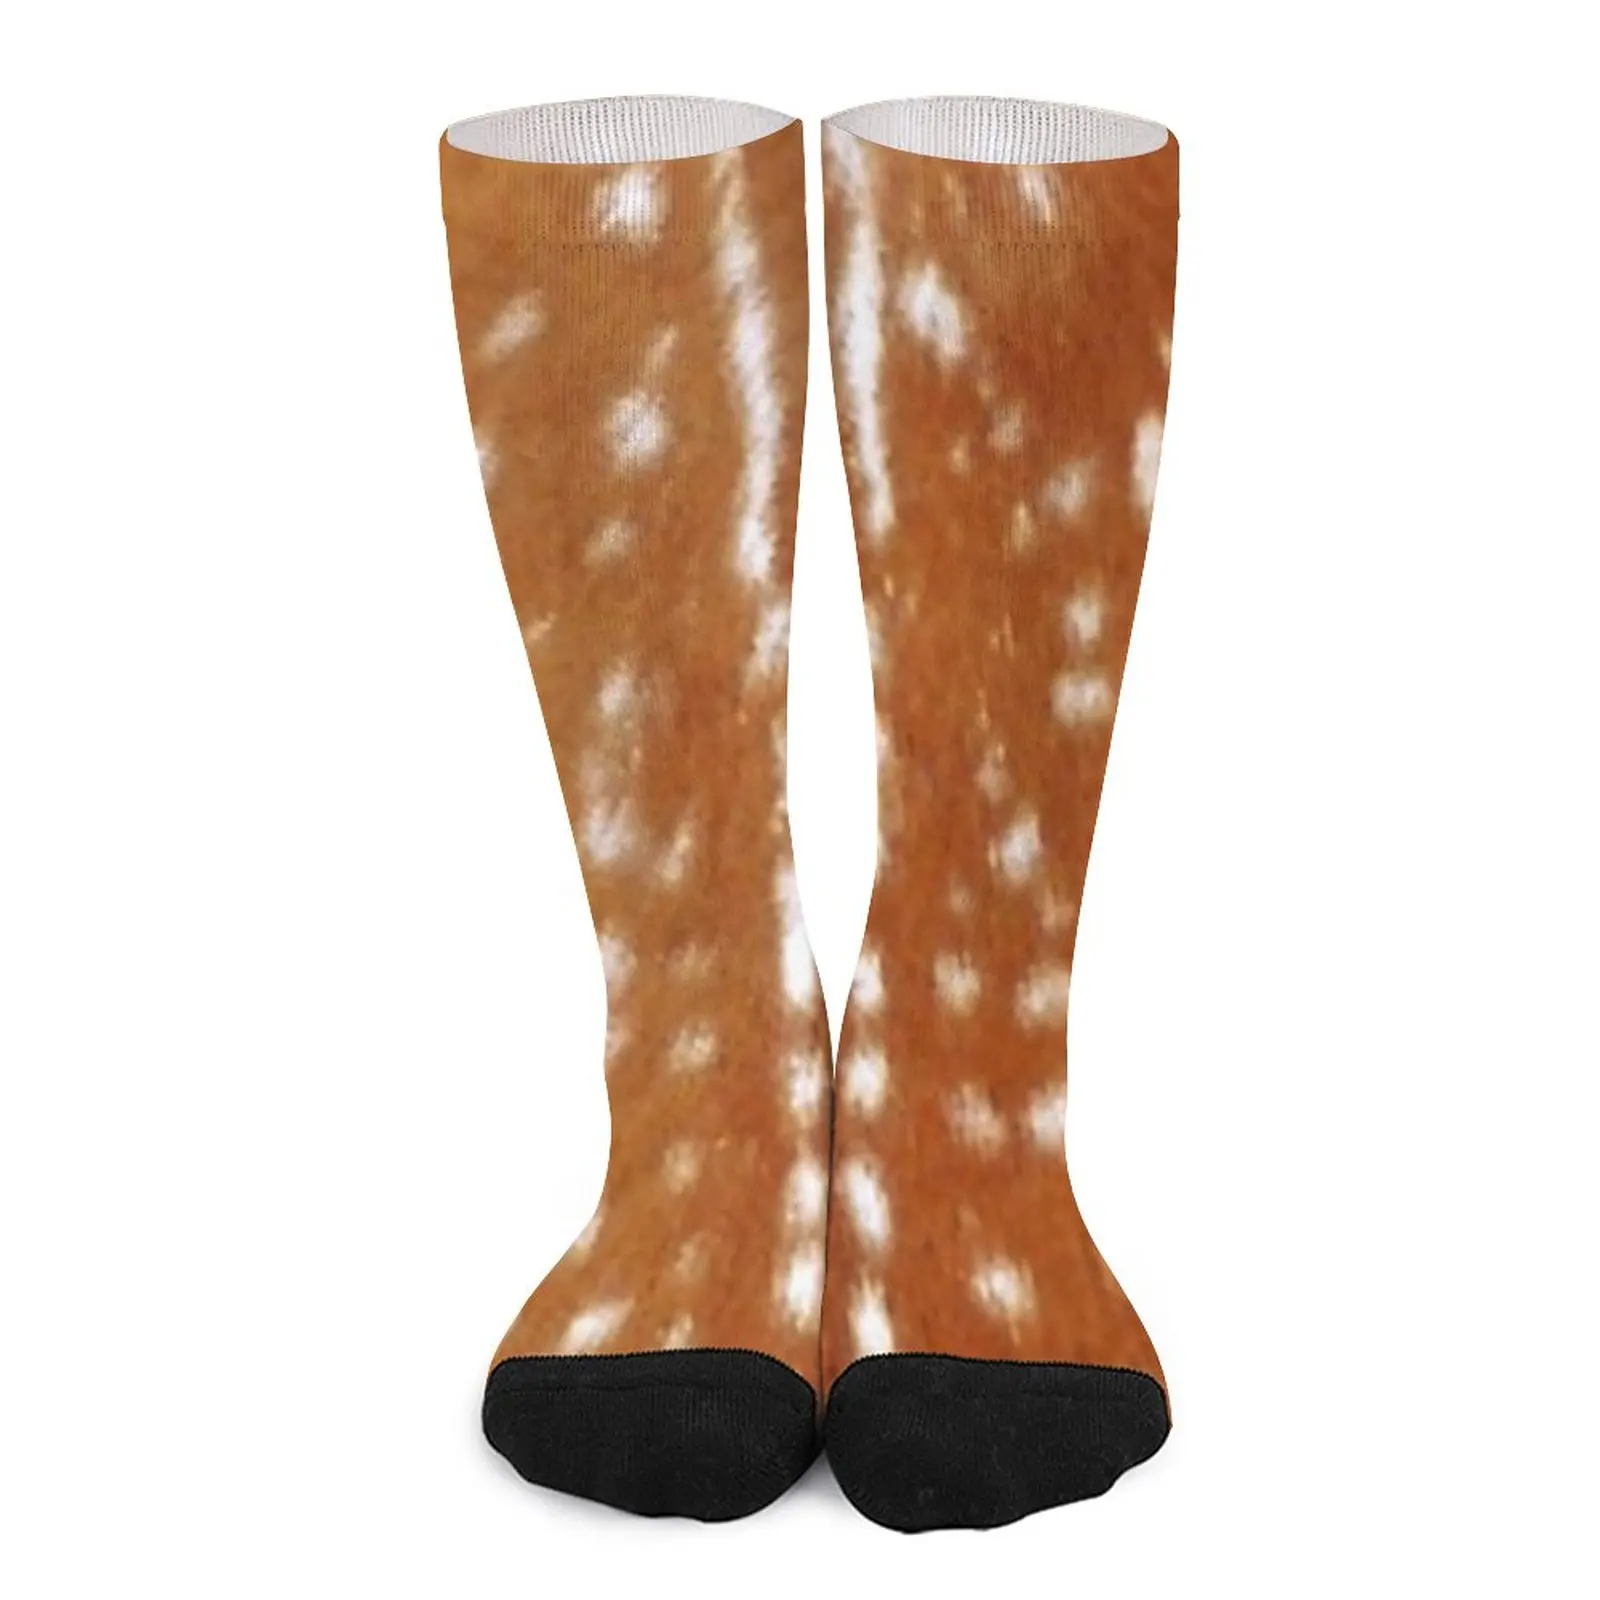 Deer hide skin brown white Socks cotton socks men socks for men Women's socks high hide